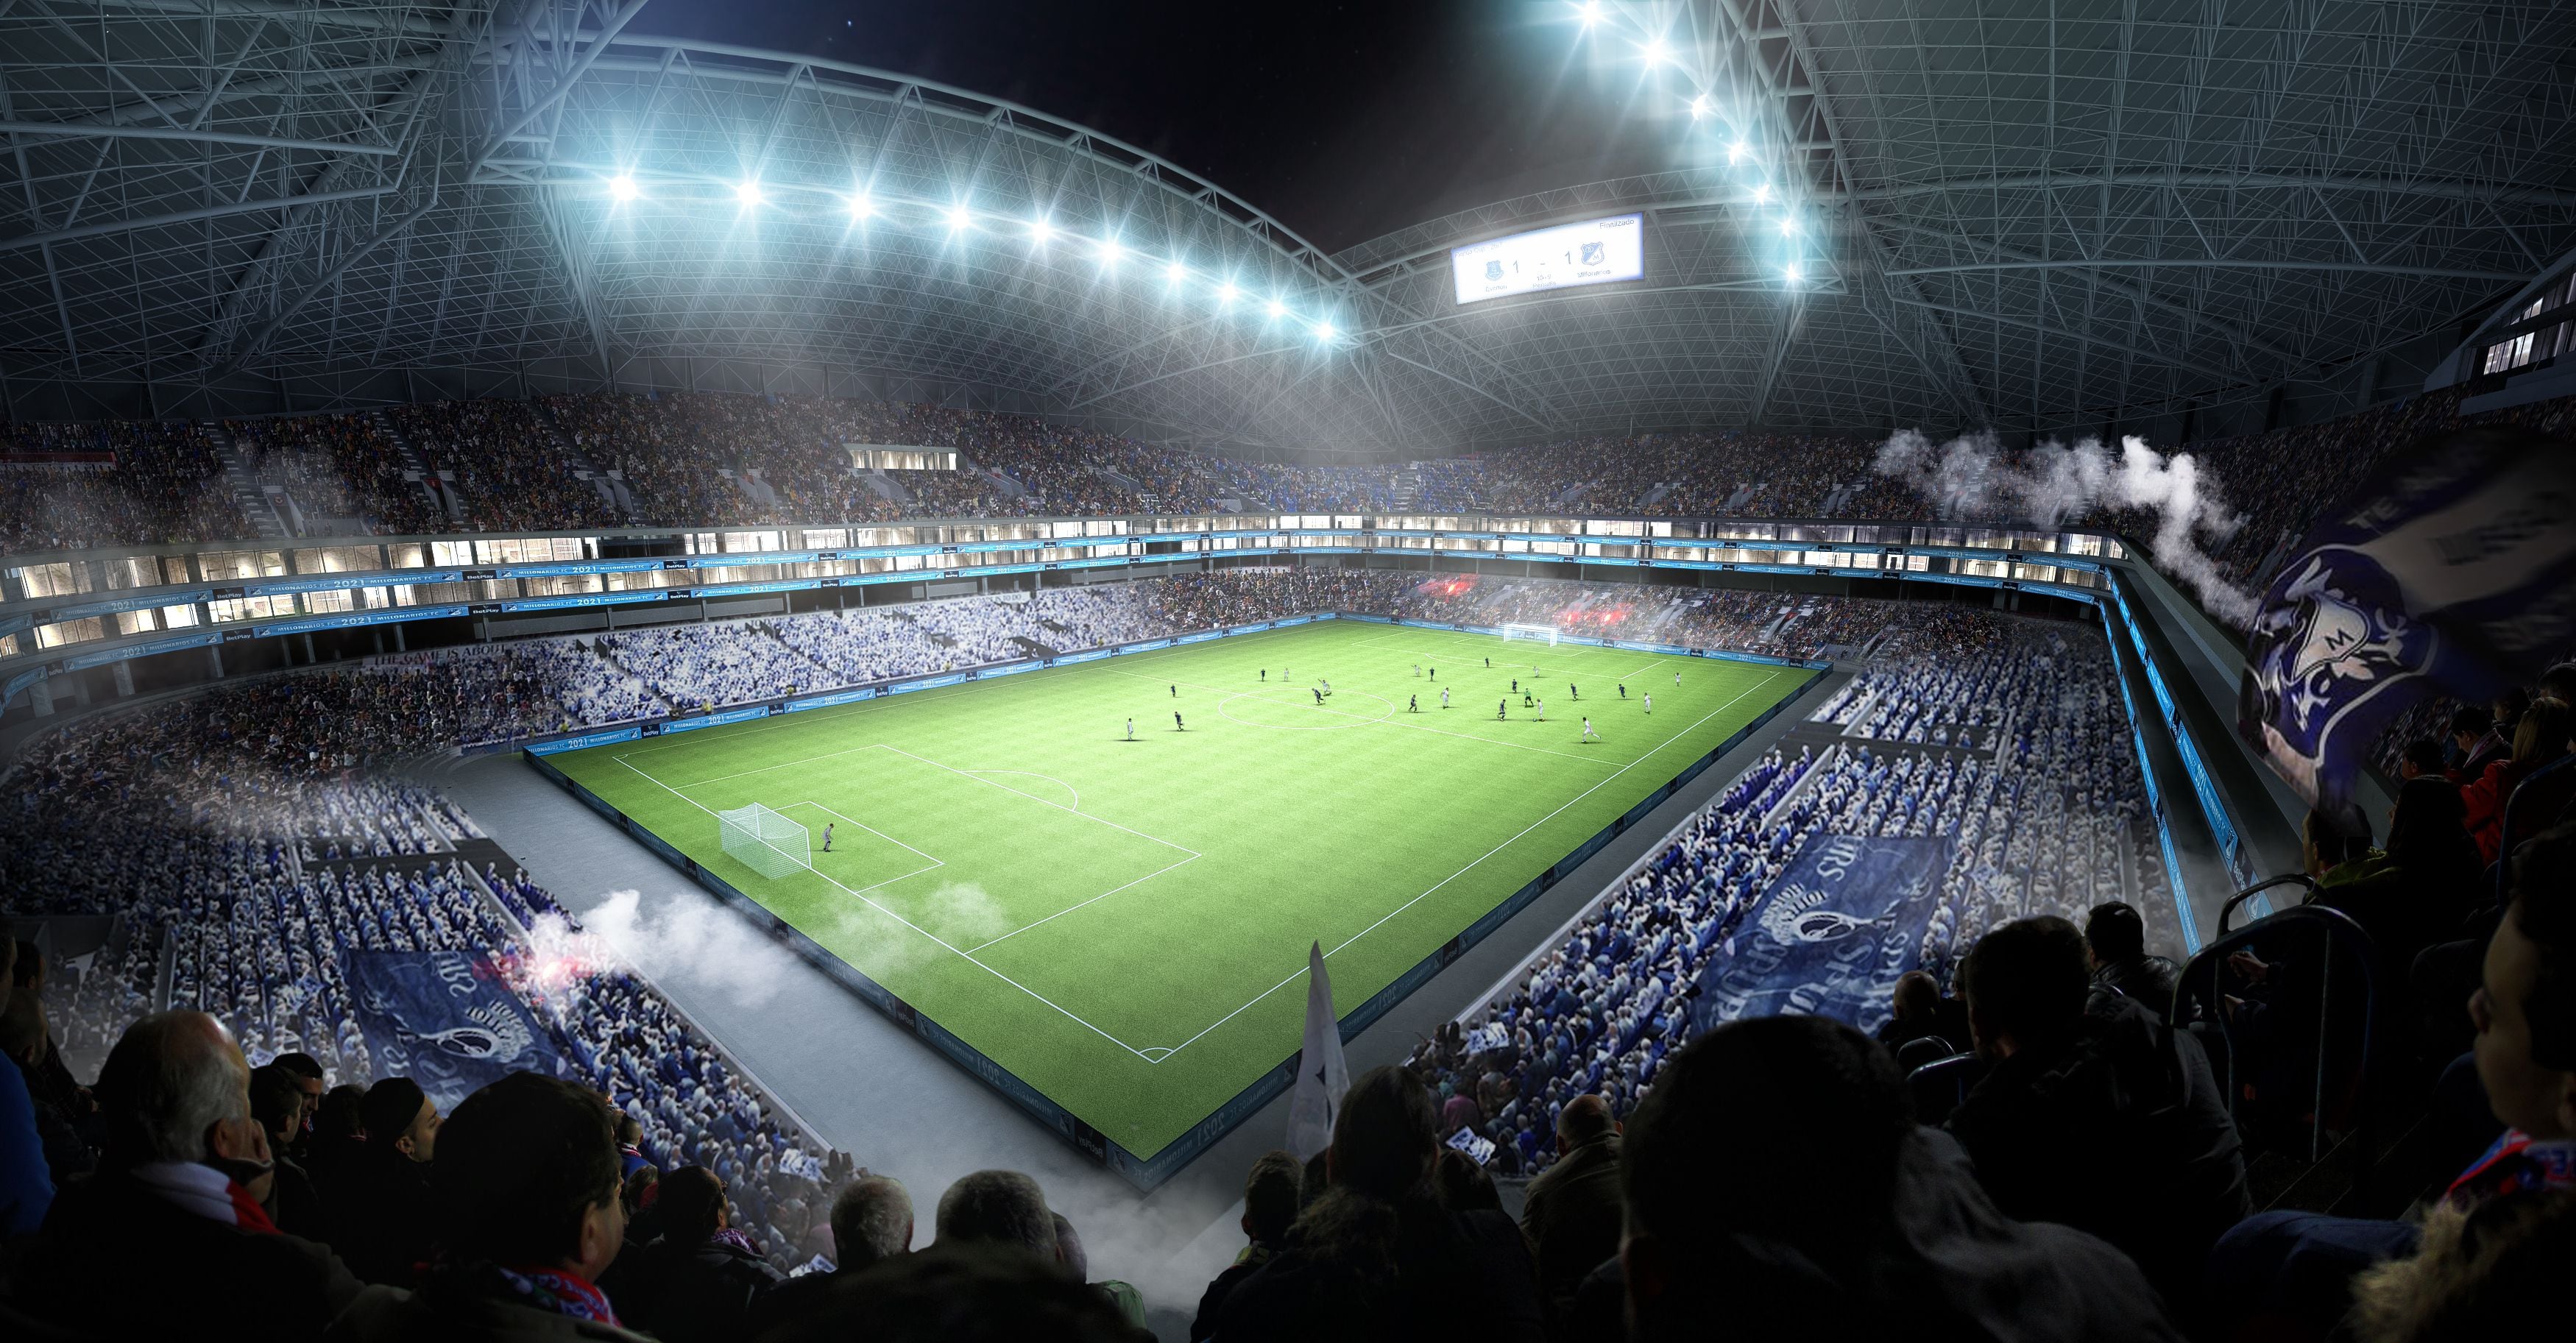 La modernización del estadio El Campín y sus zonas aledañas tendrá una inversión de 2.4 billones de pesos, los cuales serán aportados en su totalidad por las empresas privadas - crédito Instituto Distrital de Recreación y Deportes